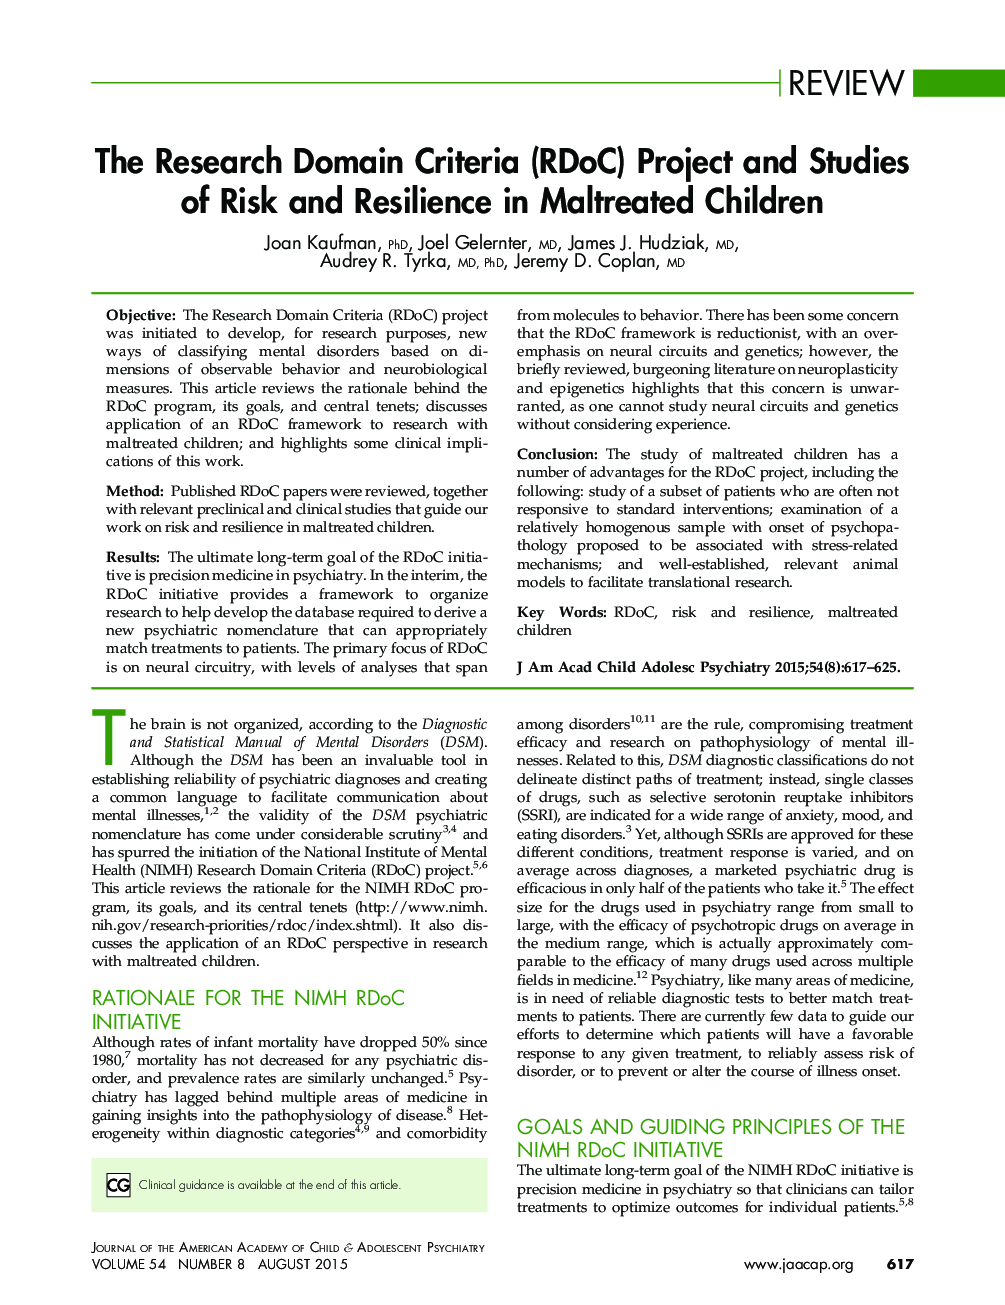 پروژه و مطالعات معیار دامنه تحقیقات (RDoC) از ریسک و انعطاف پذیری در کودکان بدرفتار شده